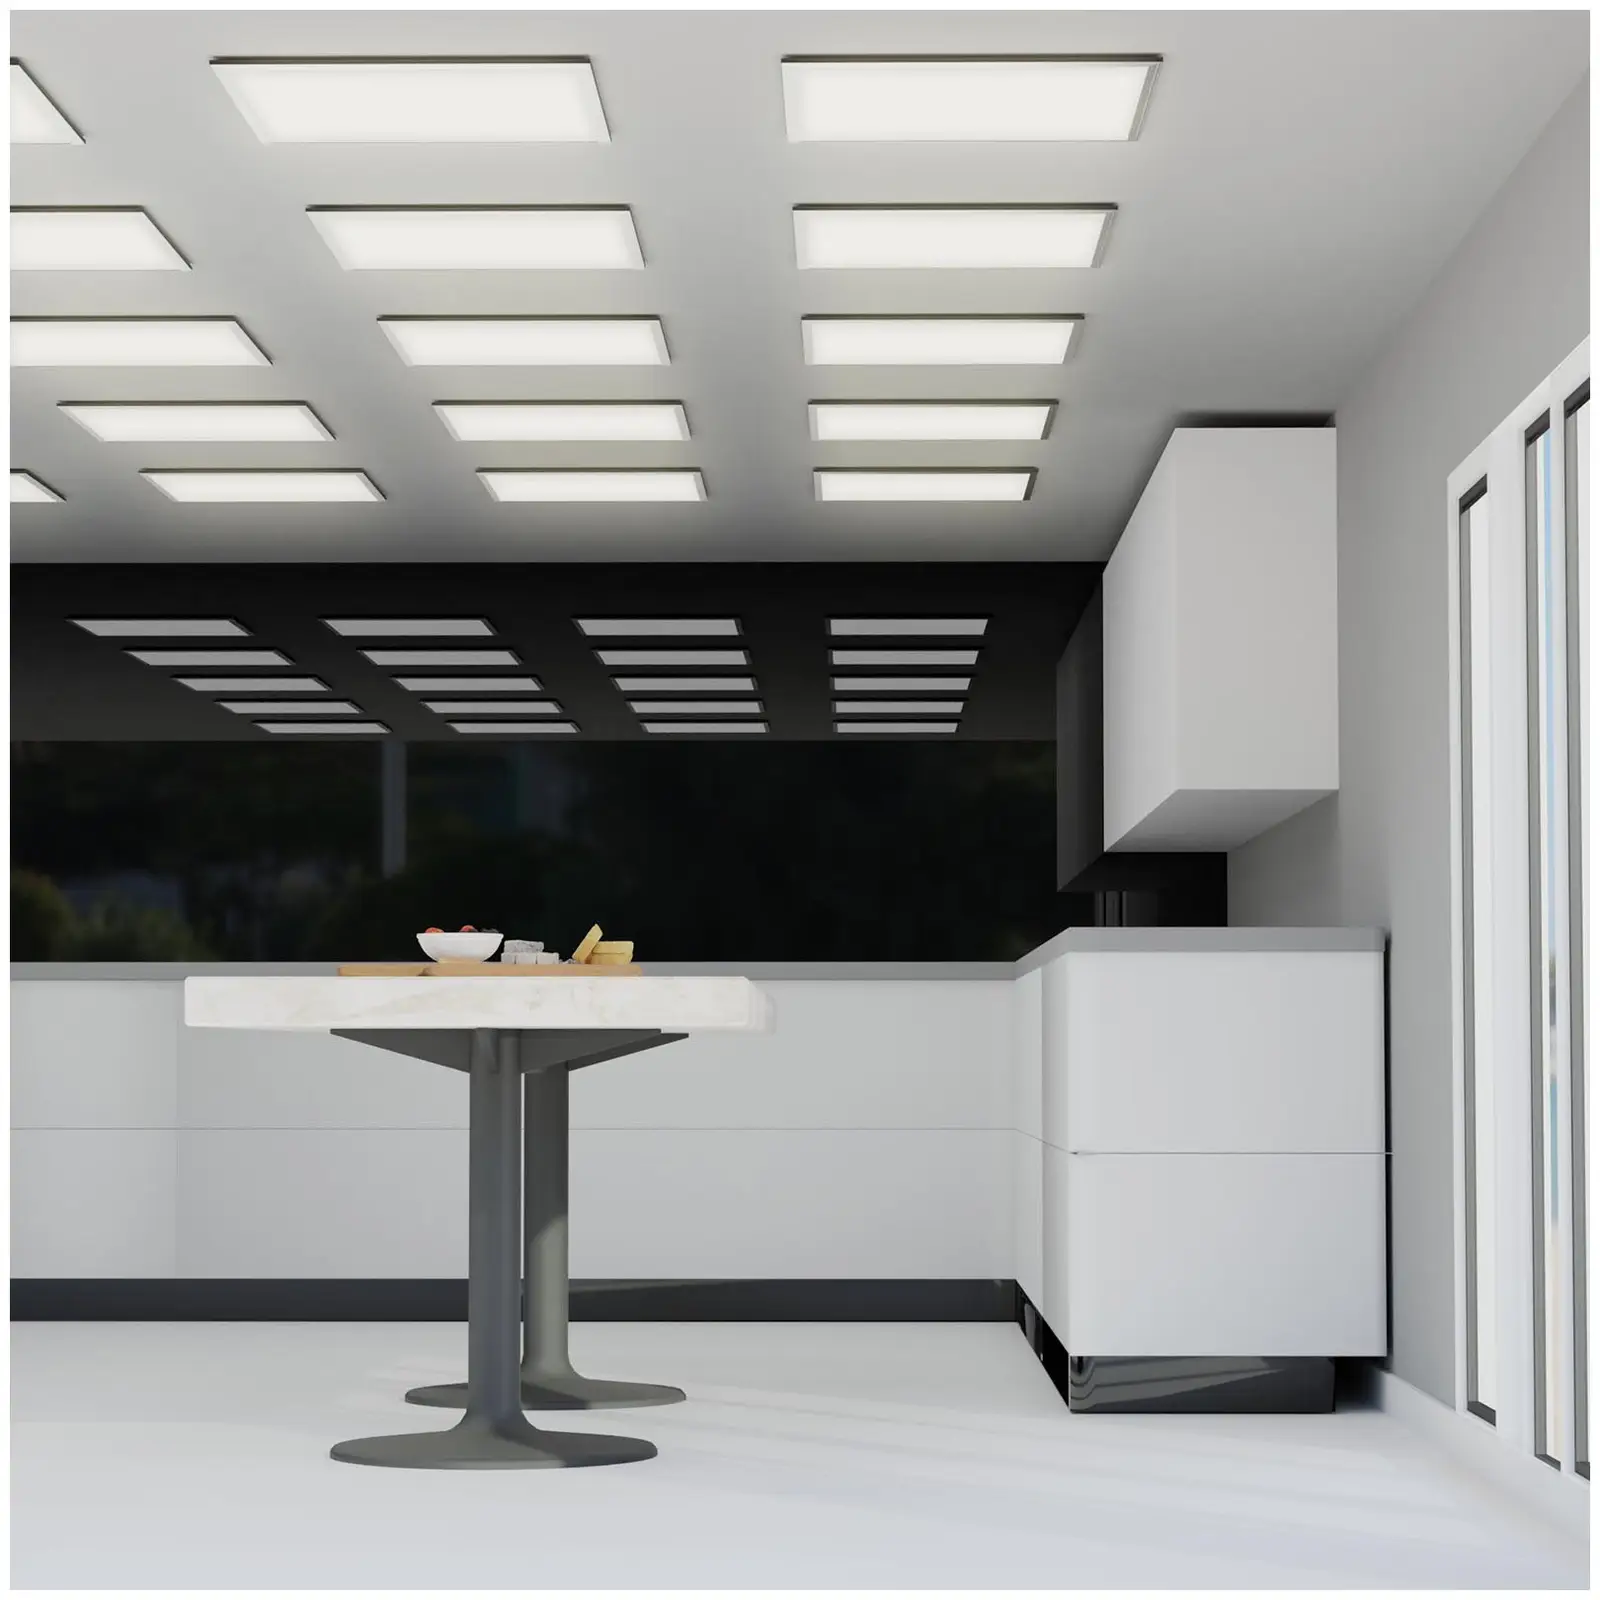 LED Ceiling Panel - 62 x 62 cm - 40 W - 3,800 lm - 4,000 K (neutral white)